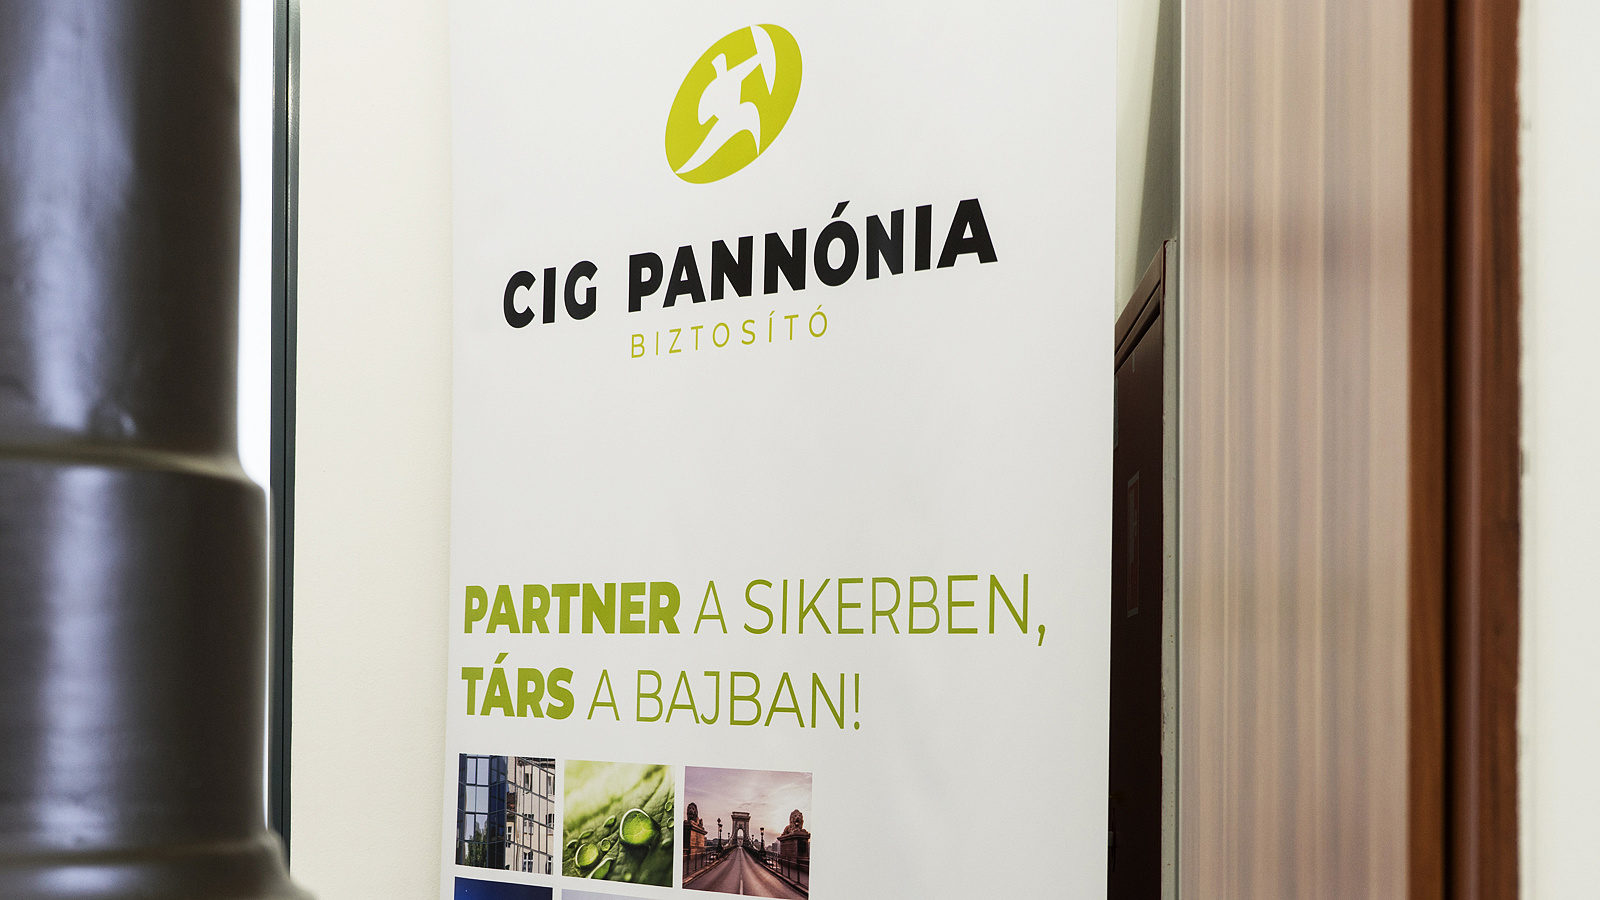 CIG Pannónia Premium Revenue Climbs 37% in H1